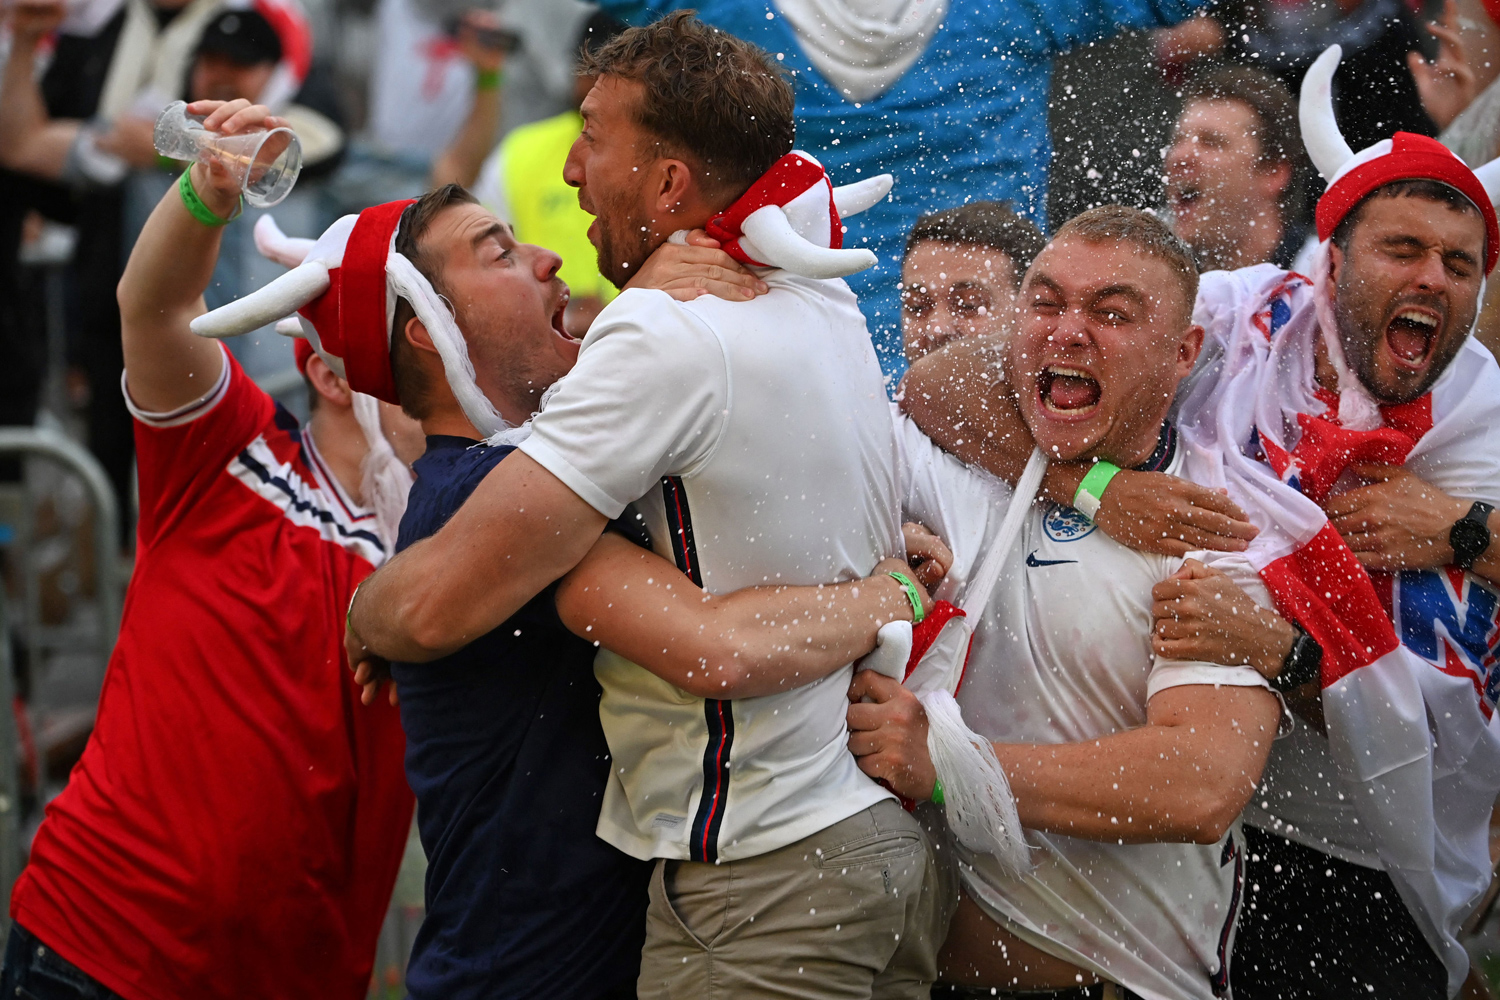 produktion Skærm lære Photos: The Fans of Euro 2020 - The Atlantic